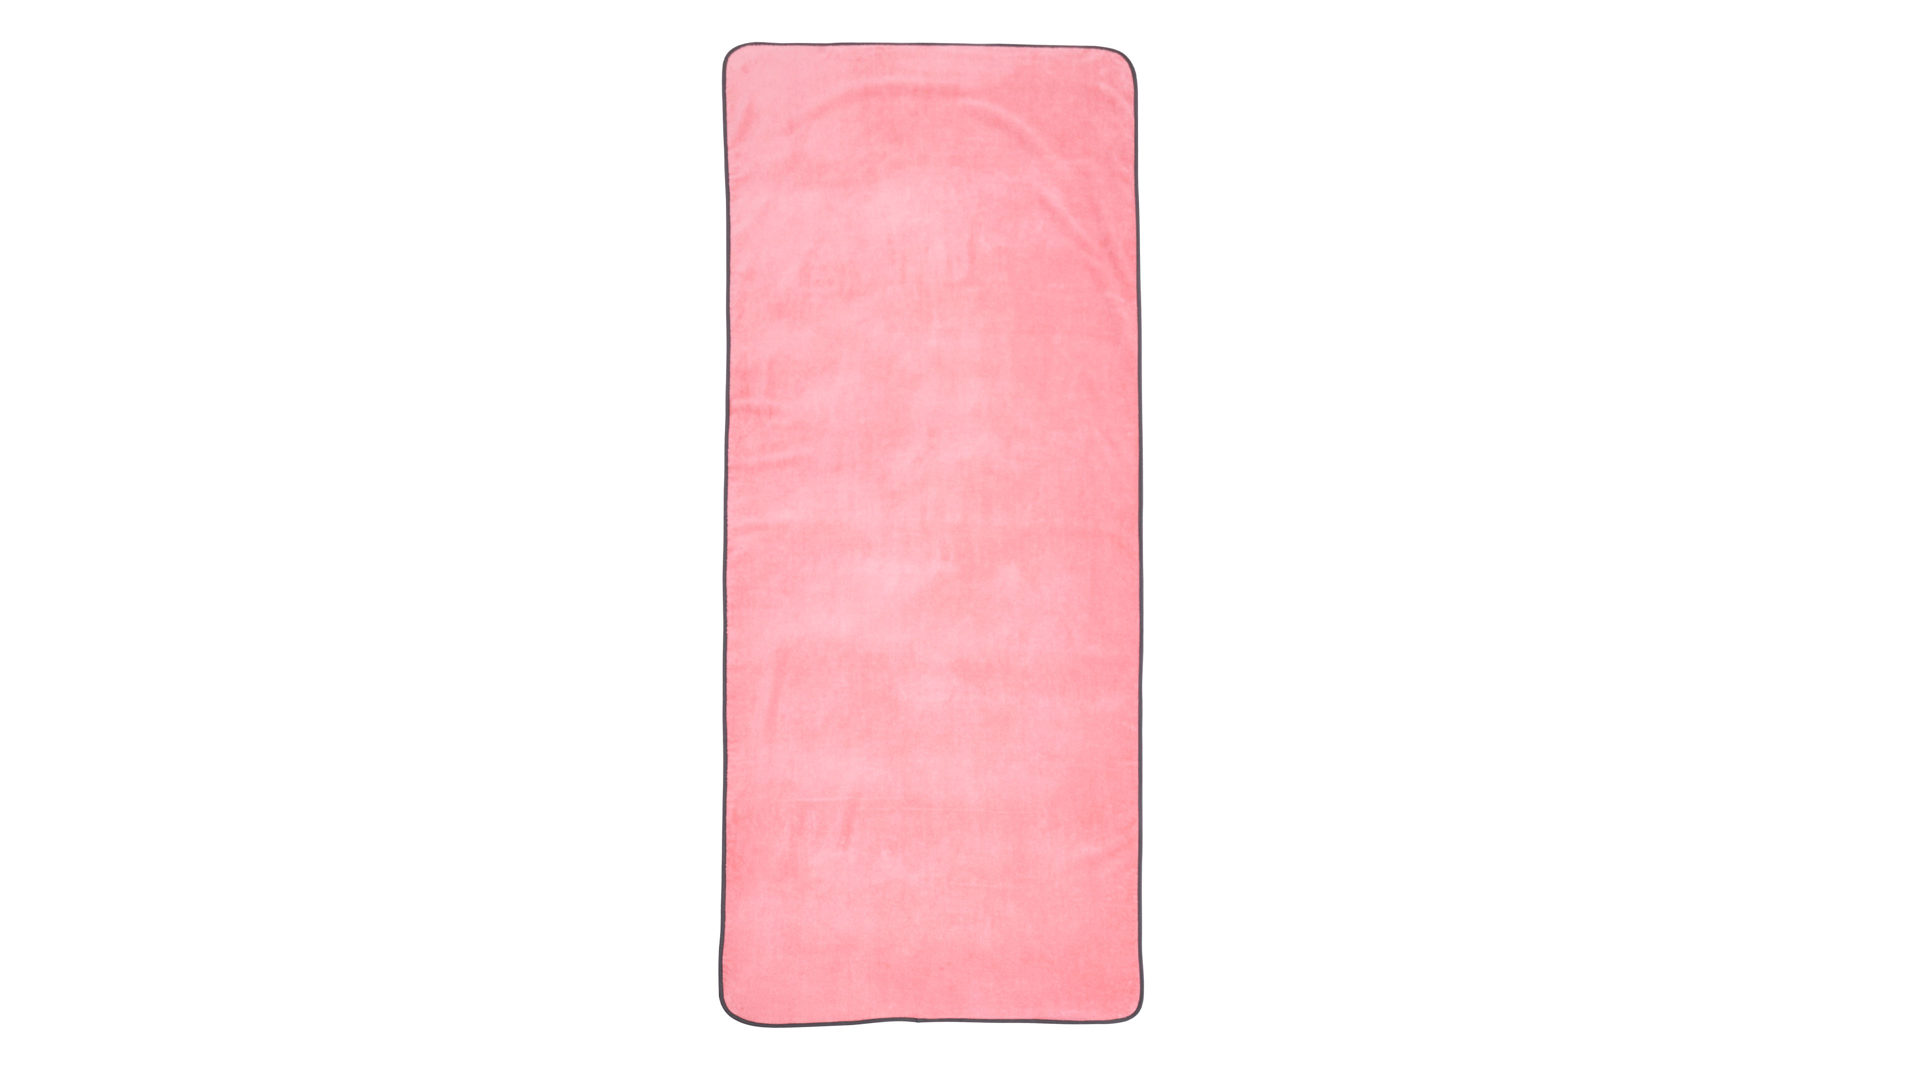 Saunahandtuch Done.® aus Stoff in Pink done.® Saunatuch blossomfarbene Baumwolle – ca. 80 x 200 cm